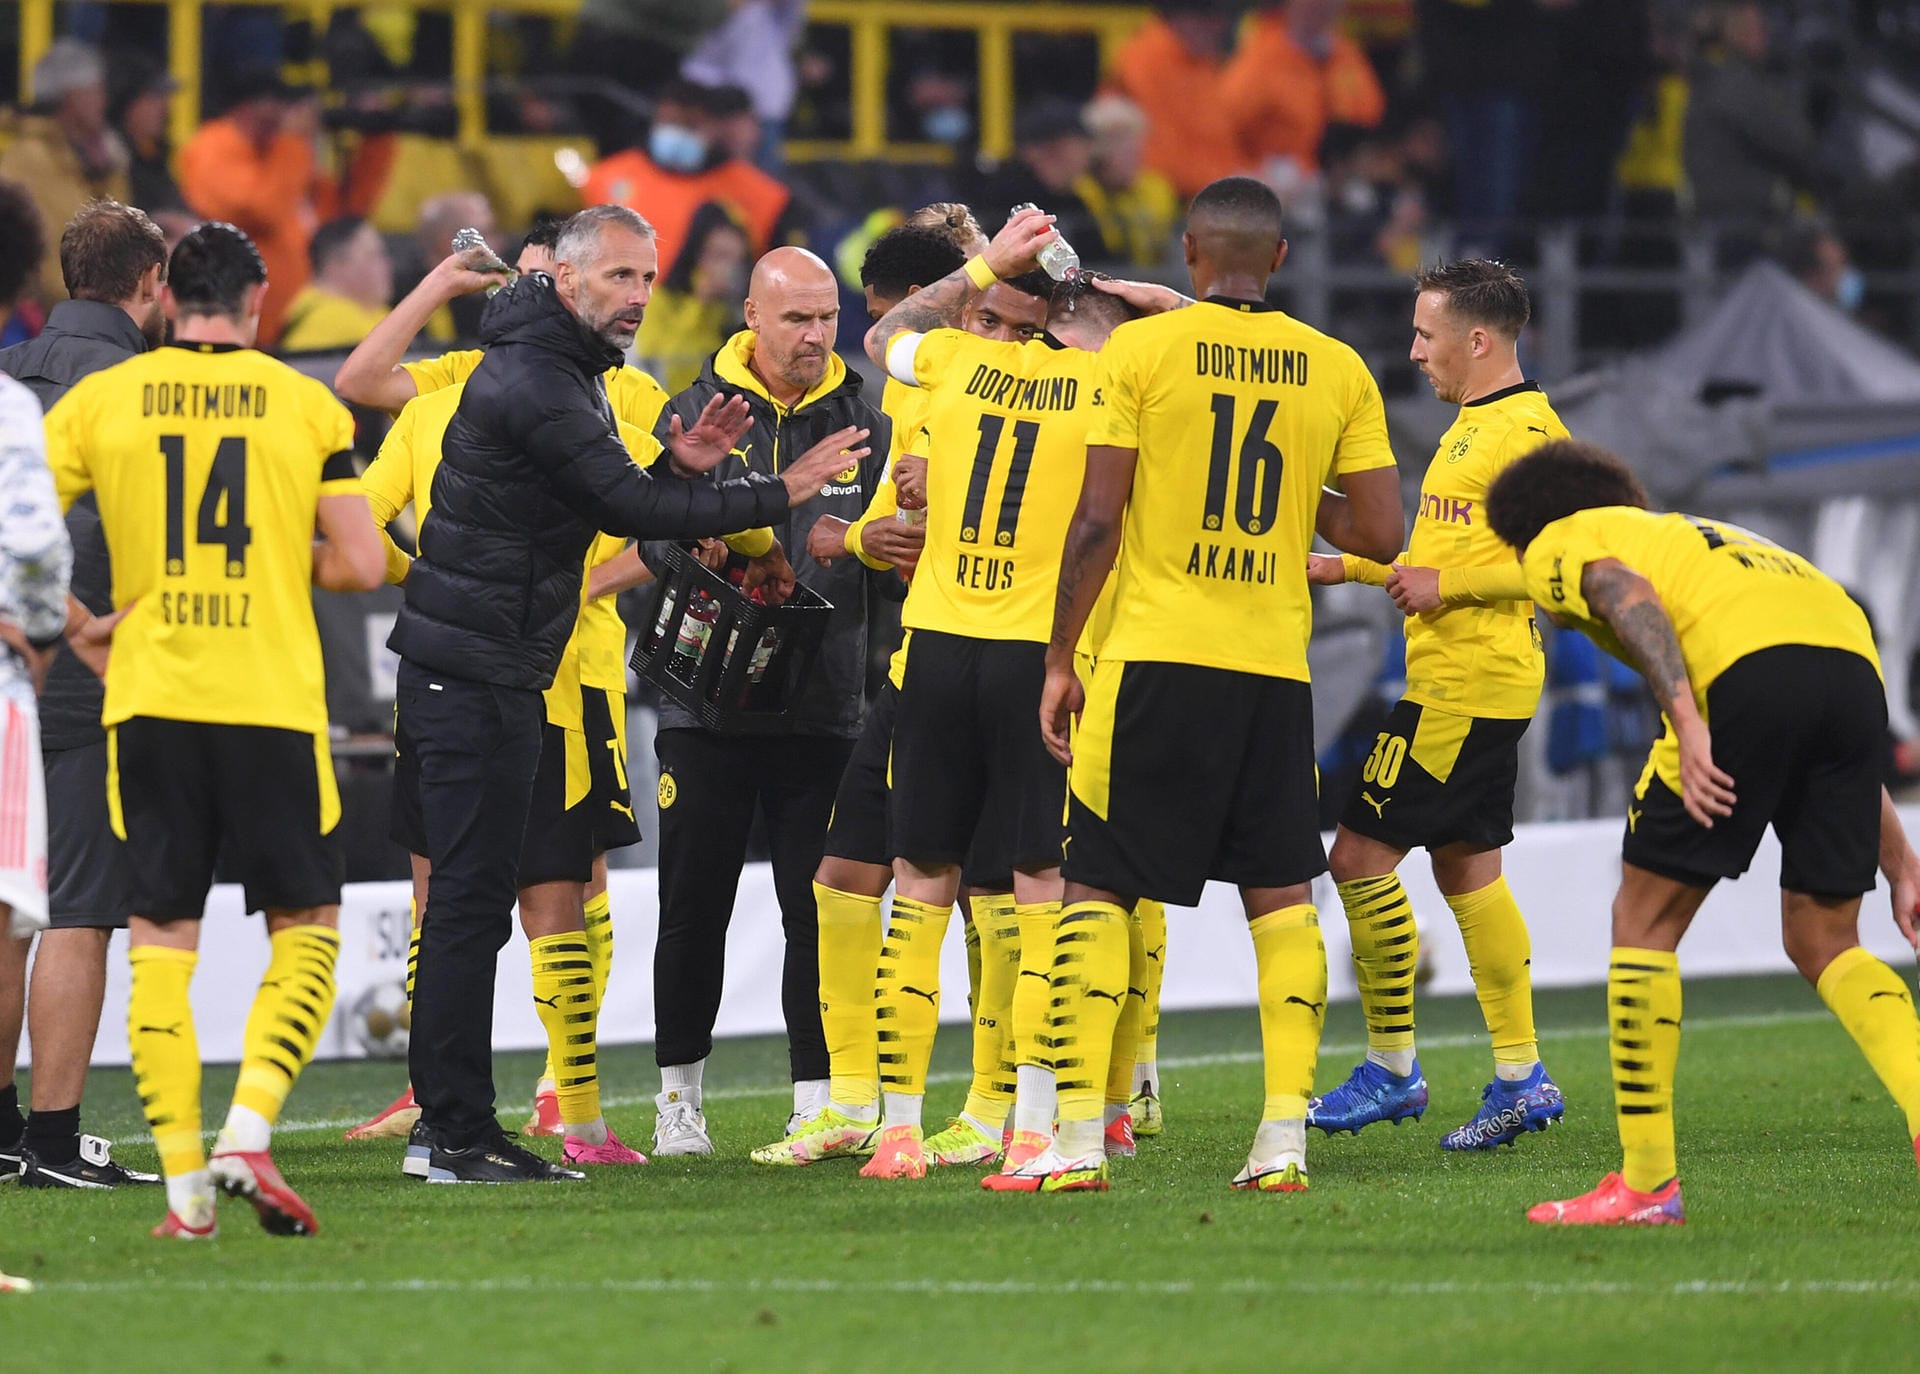 Borussia Dortmund zog im Duell mit Bayern München einmal mehr den Kürzeren. Vor heimischer Kulisse verlor der BVB im Supercup mit 1:3. Die Einzelkritik.